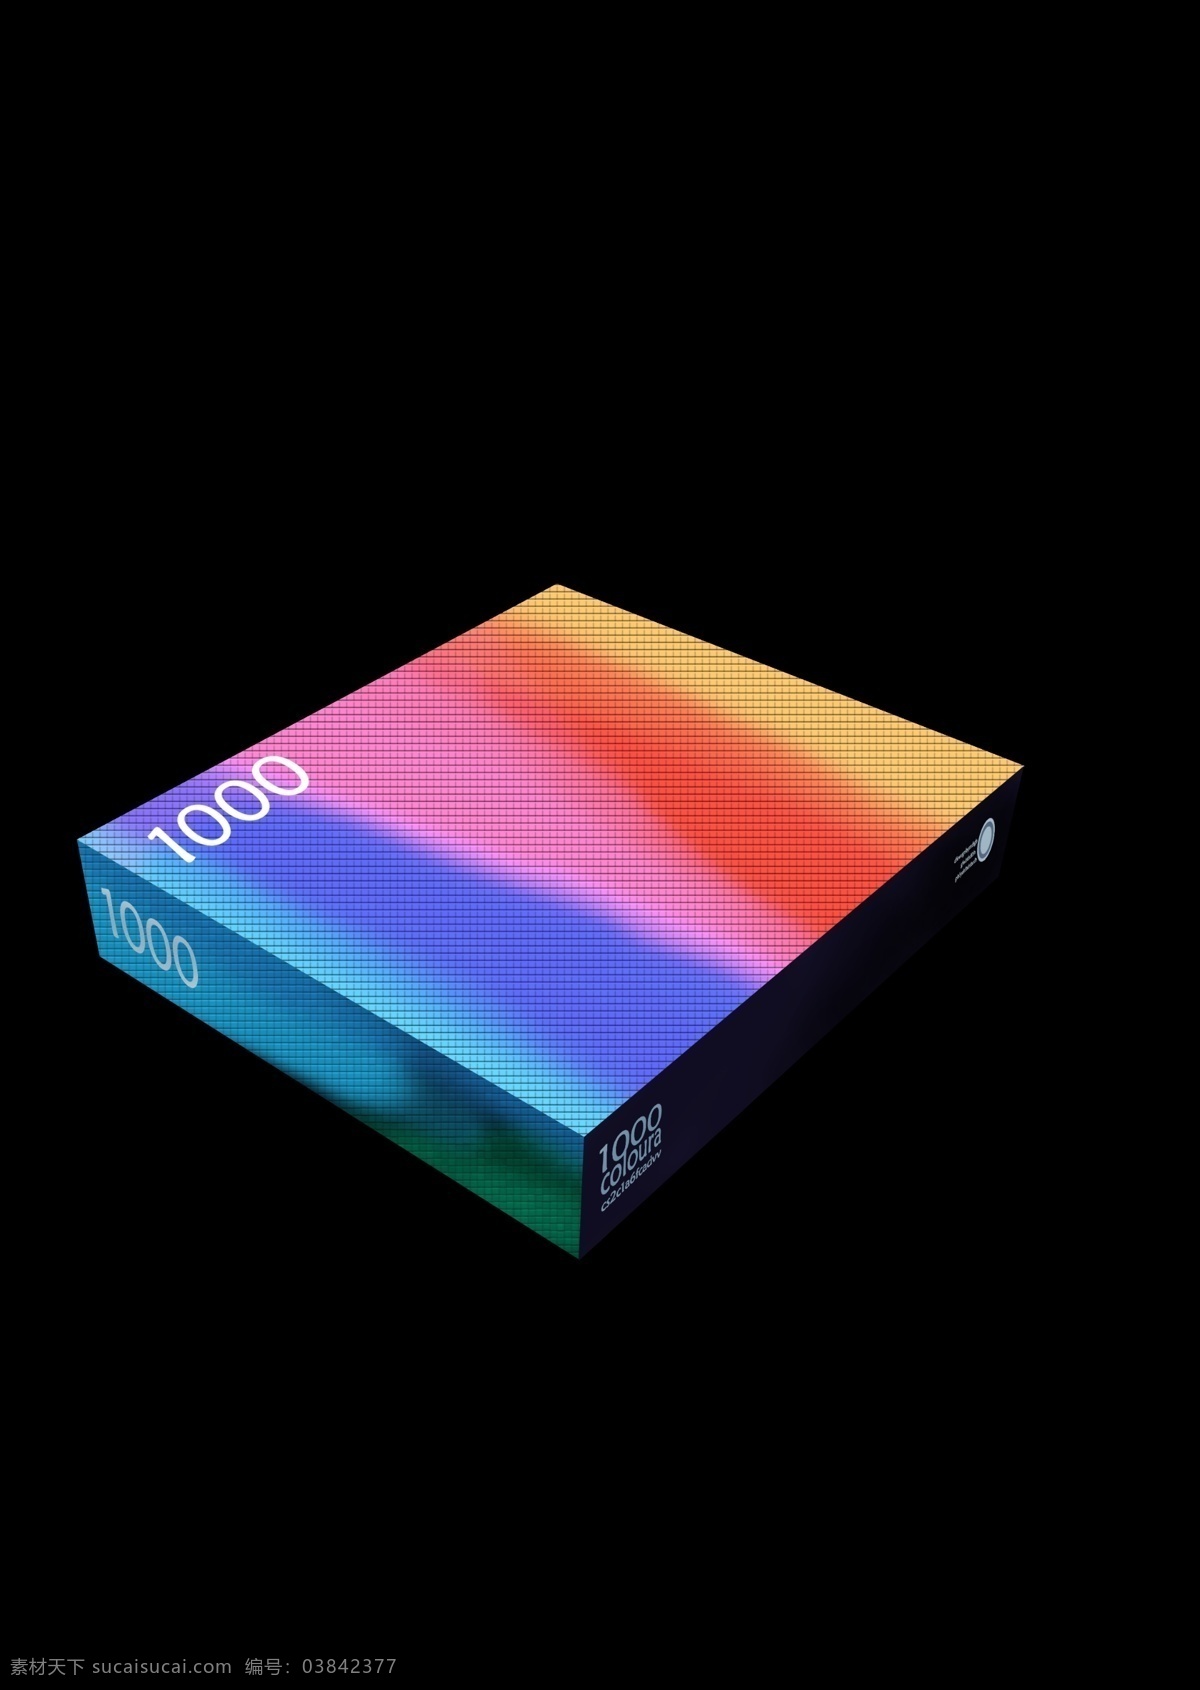 炫彩盒子 效果图 彩色 盒子 立体图 炫彩 包装 杂 生活百科